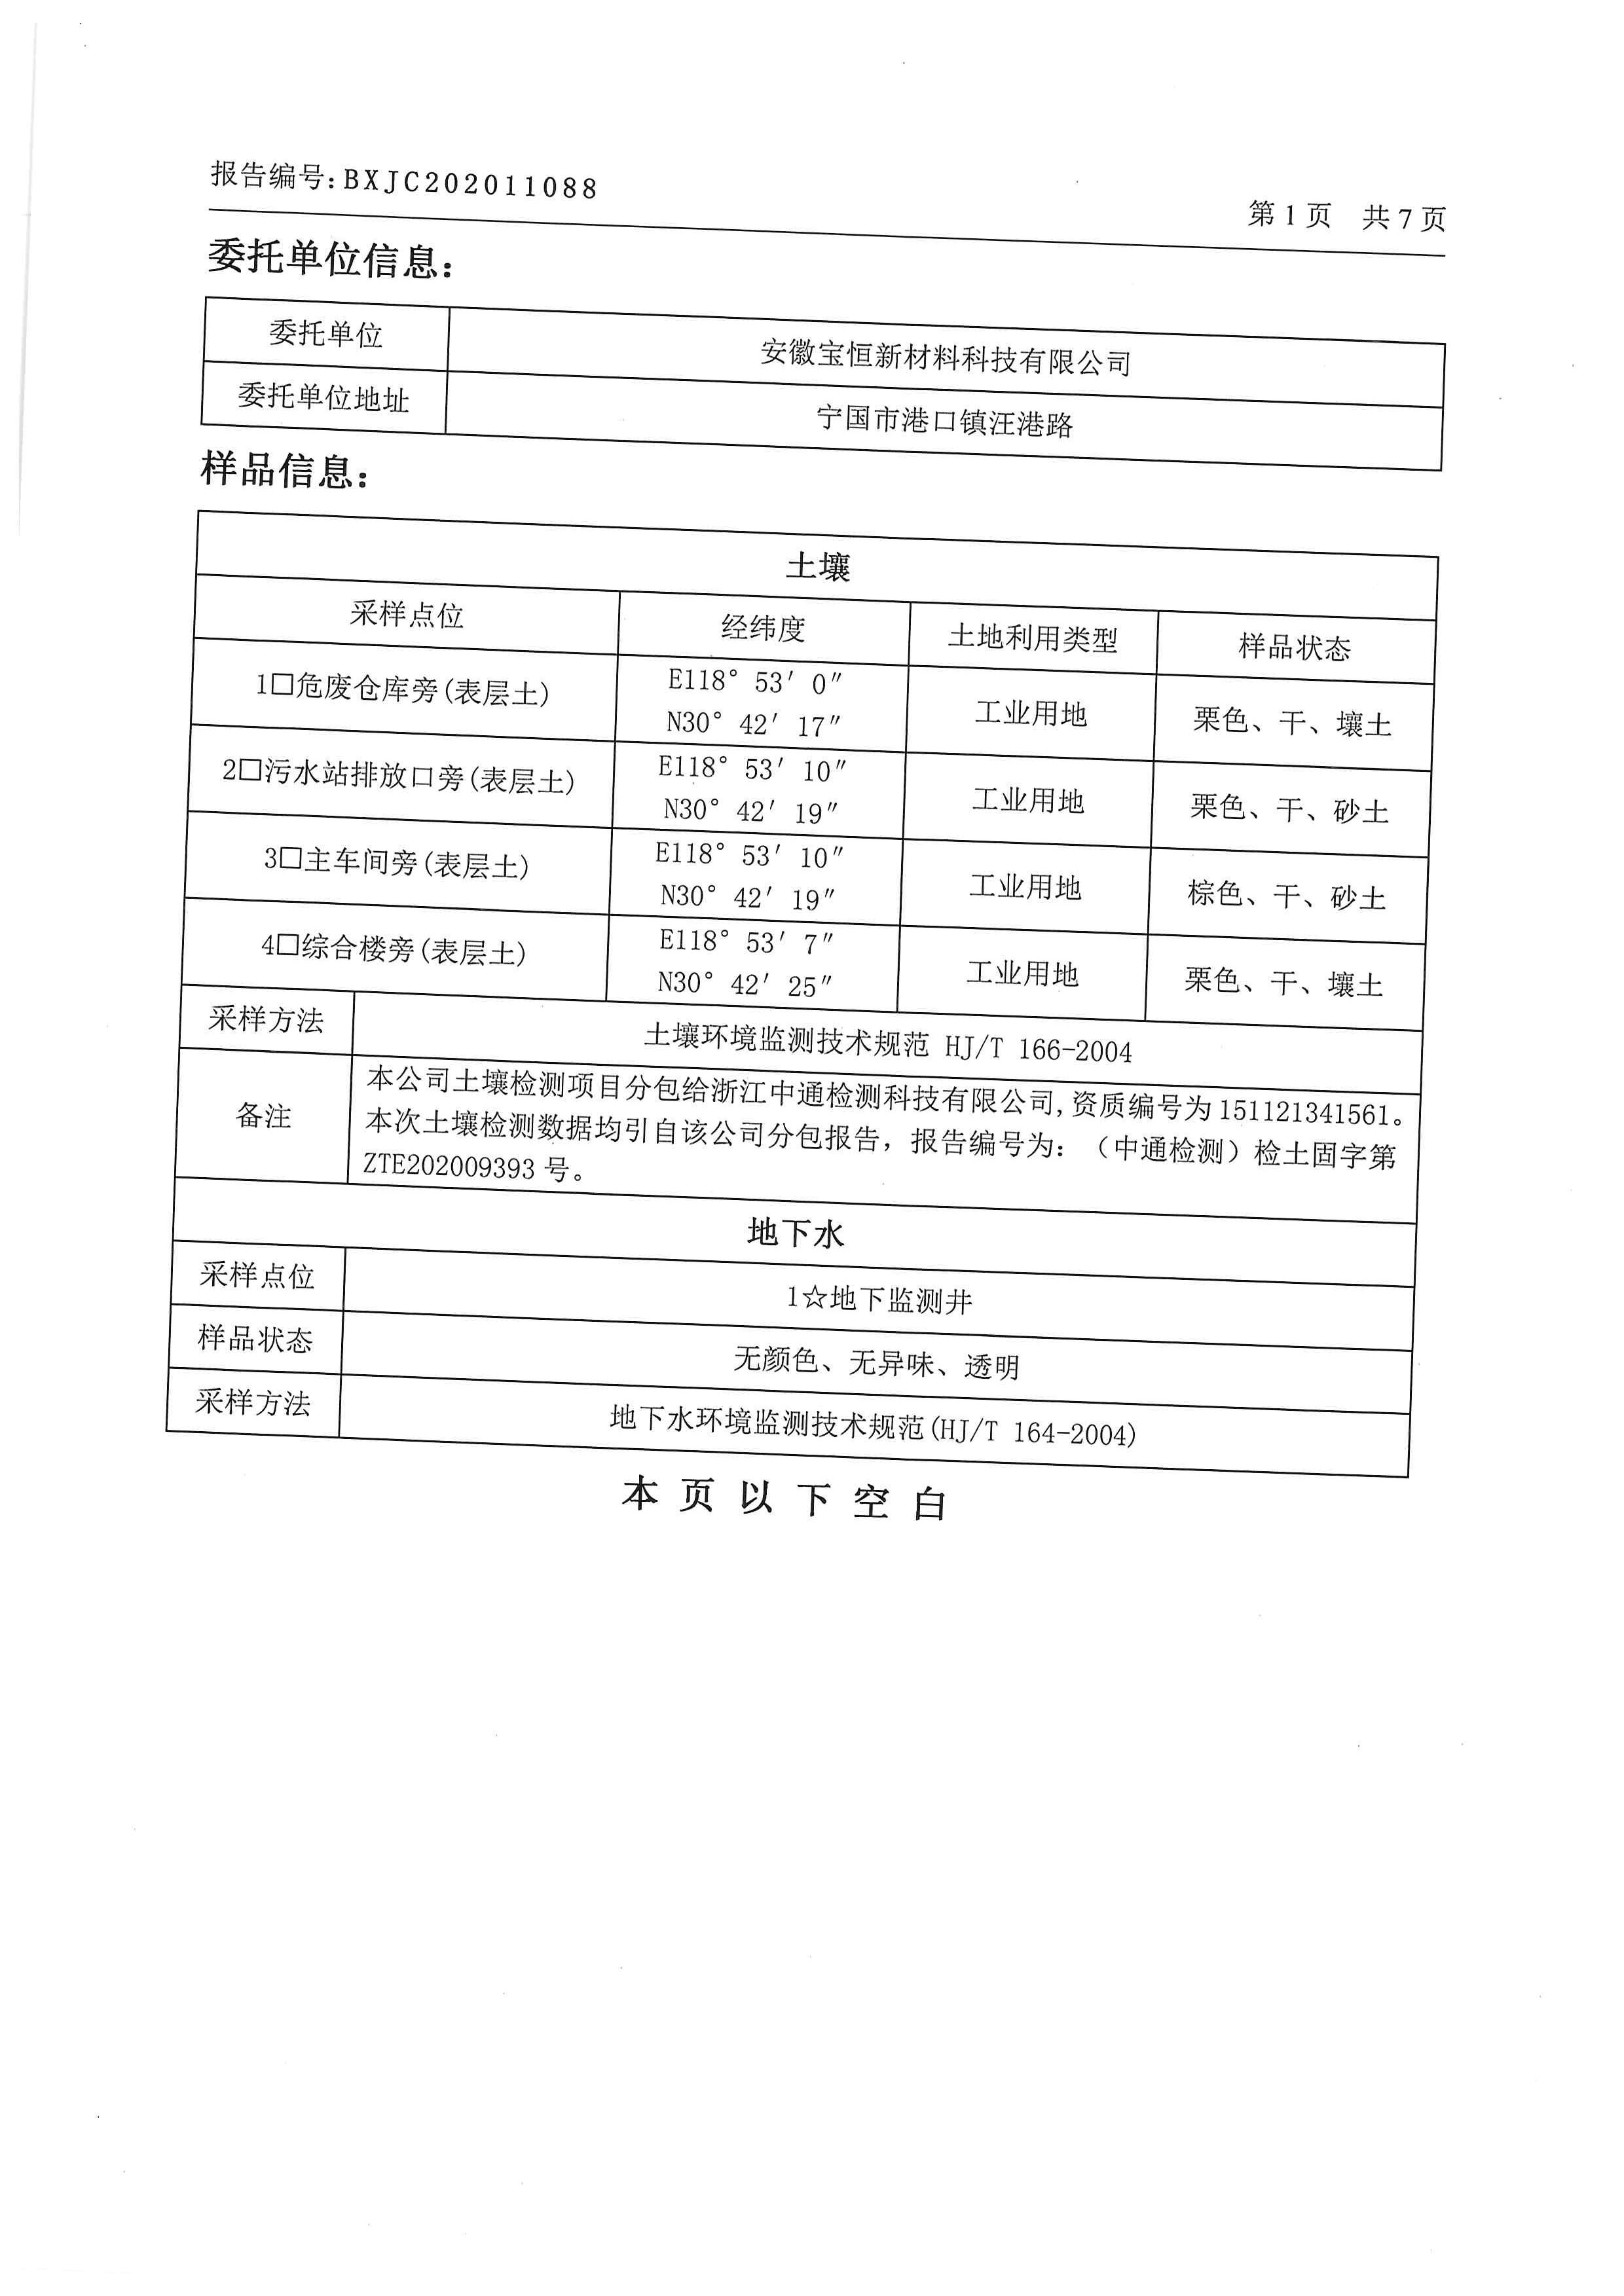 202011088安徽宝恒新材料科技有限公司_页面_03.jpg